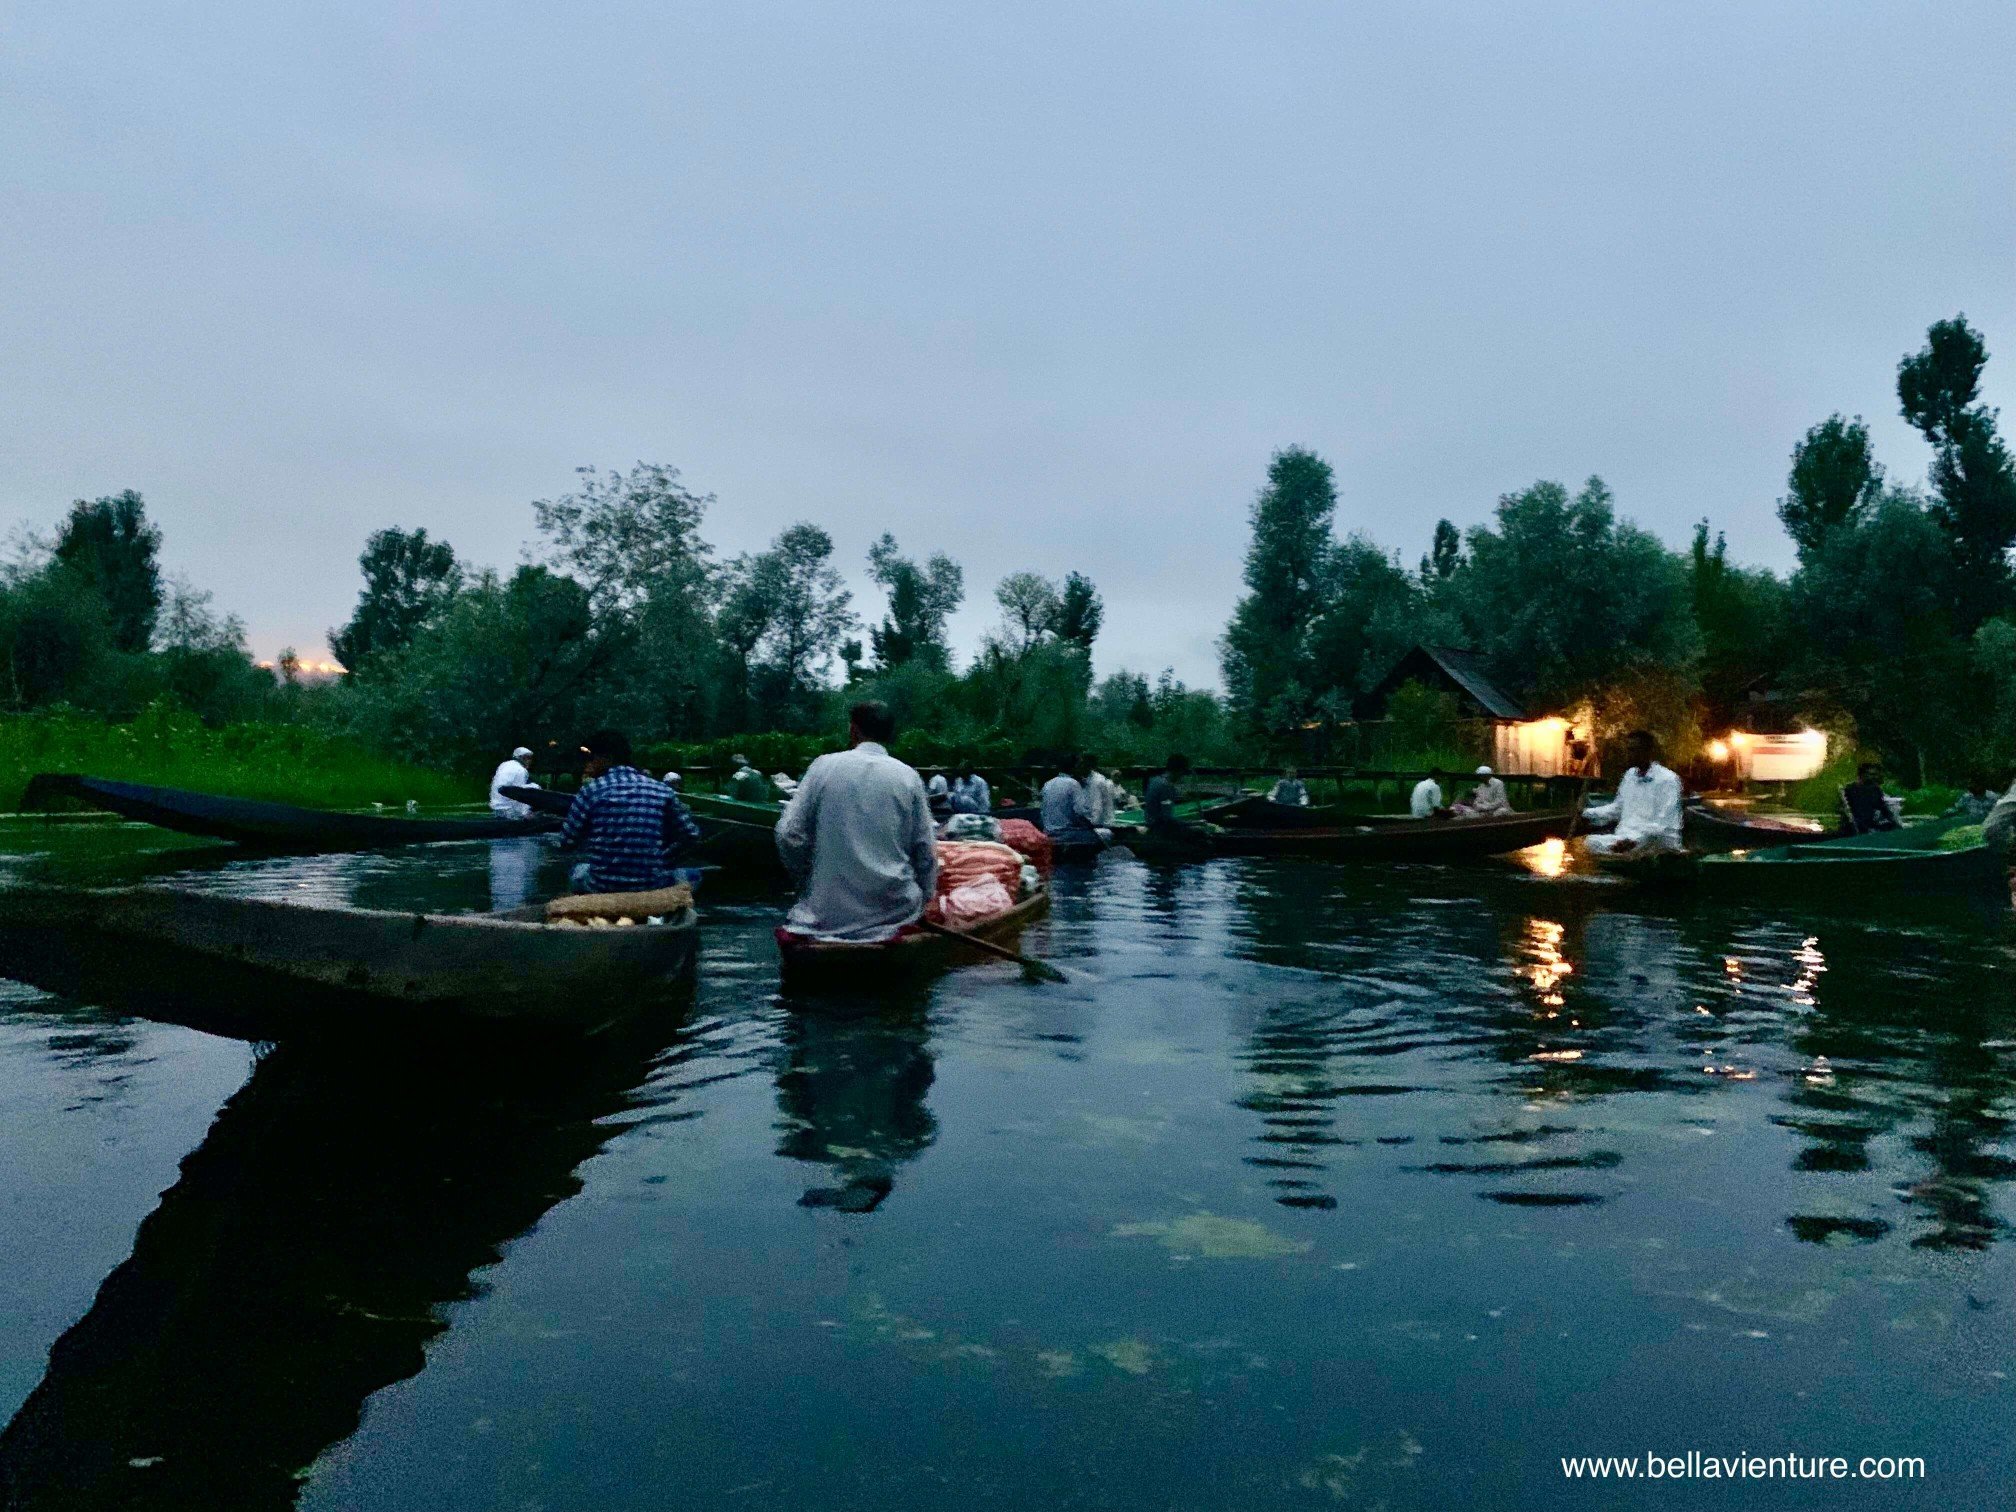 北北印 印度 India 喀什米爾 Kashmir 水上市集 Floating market 清晨